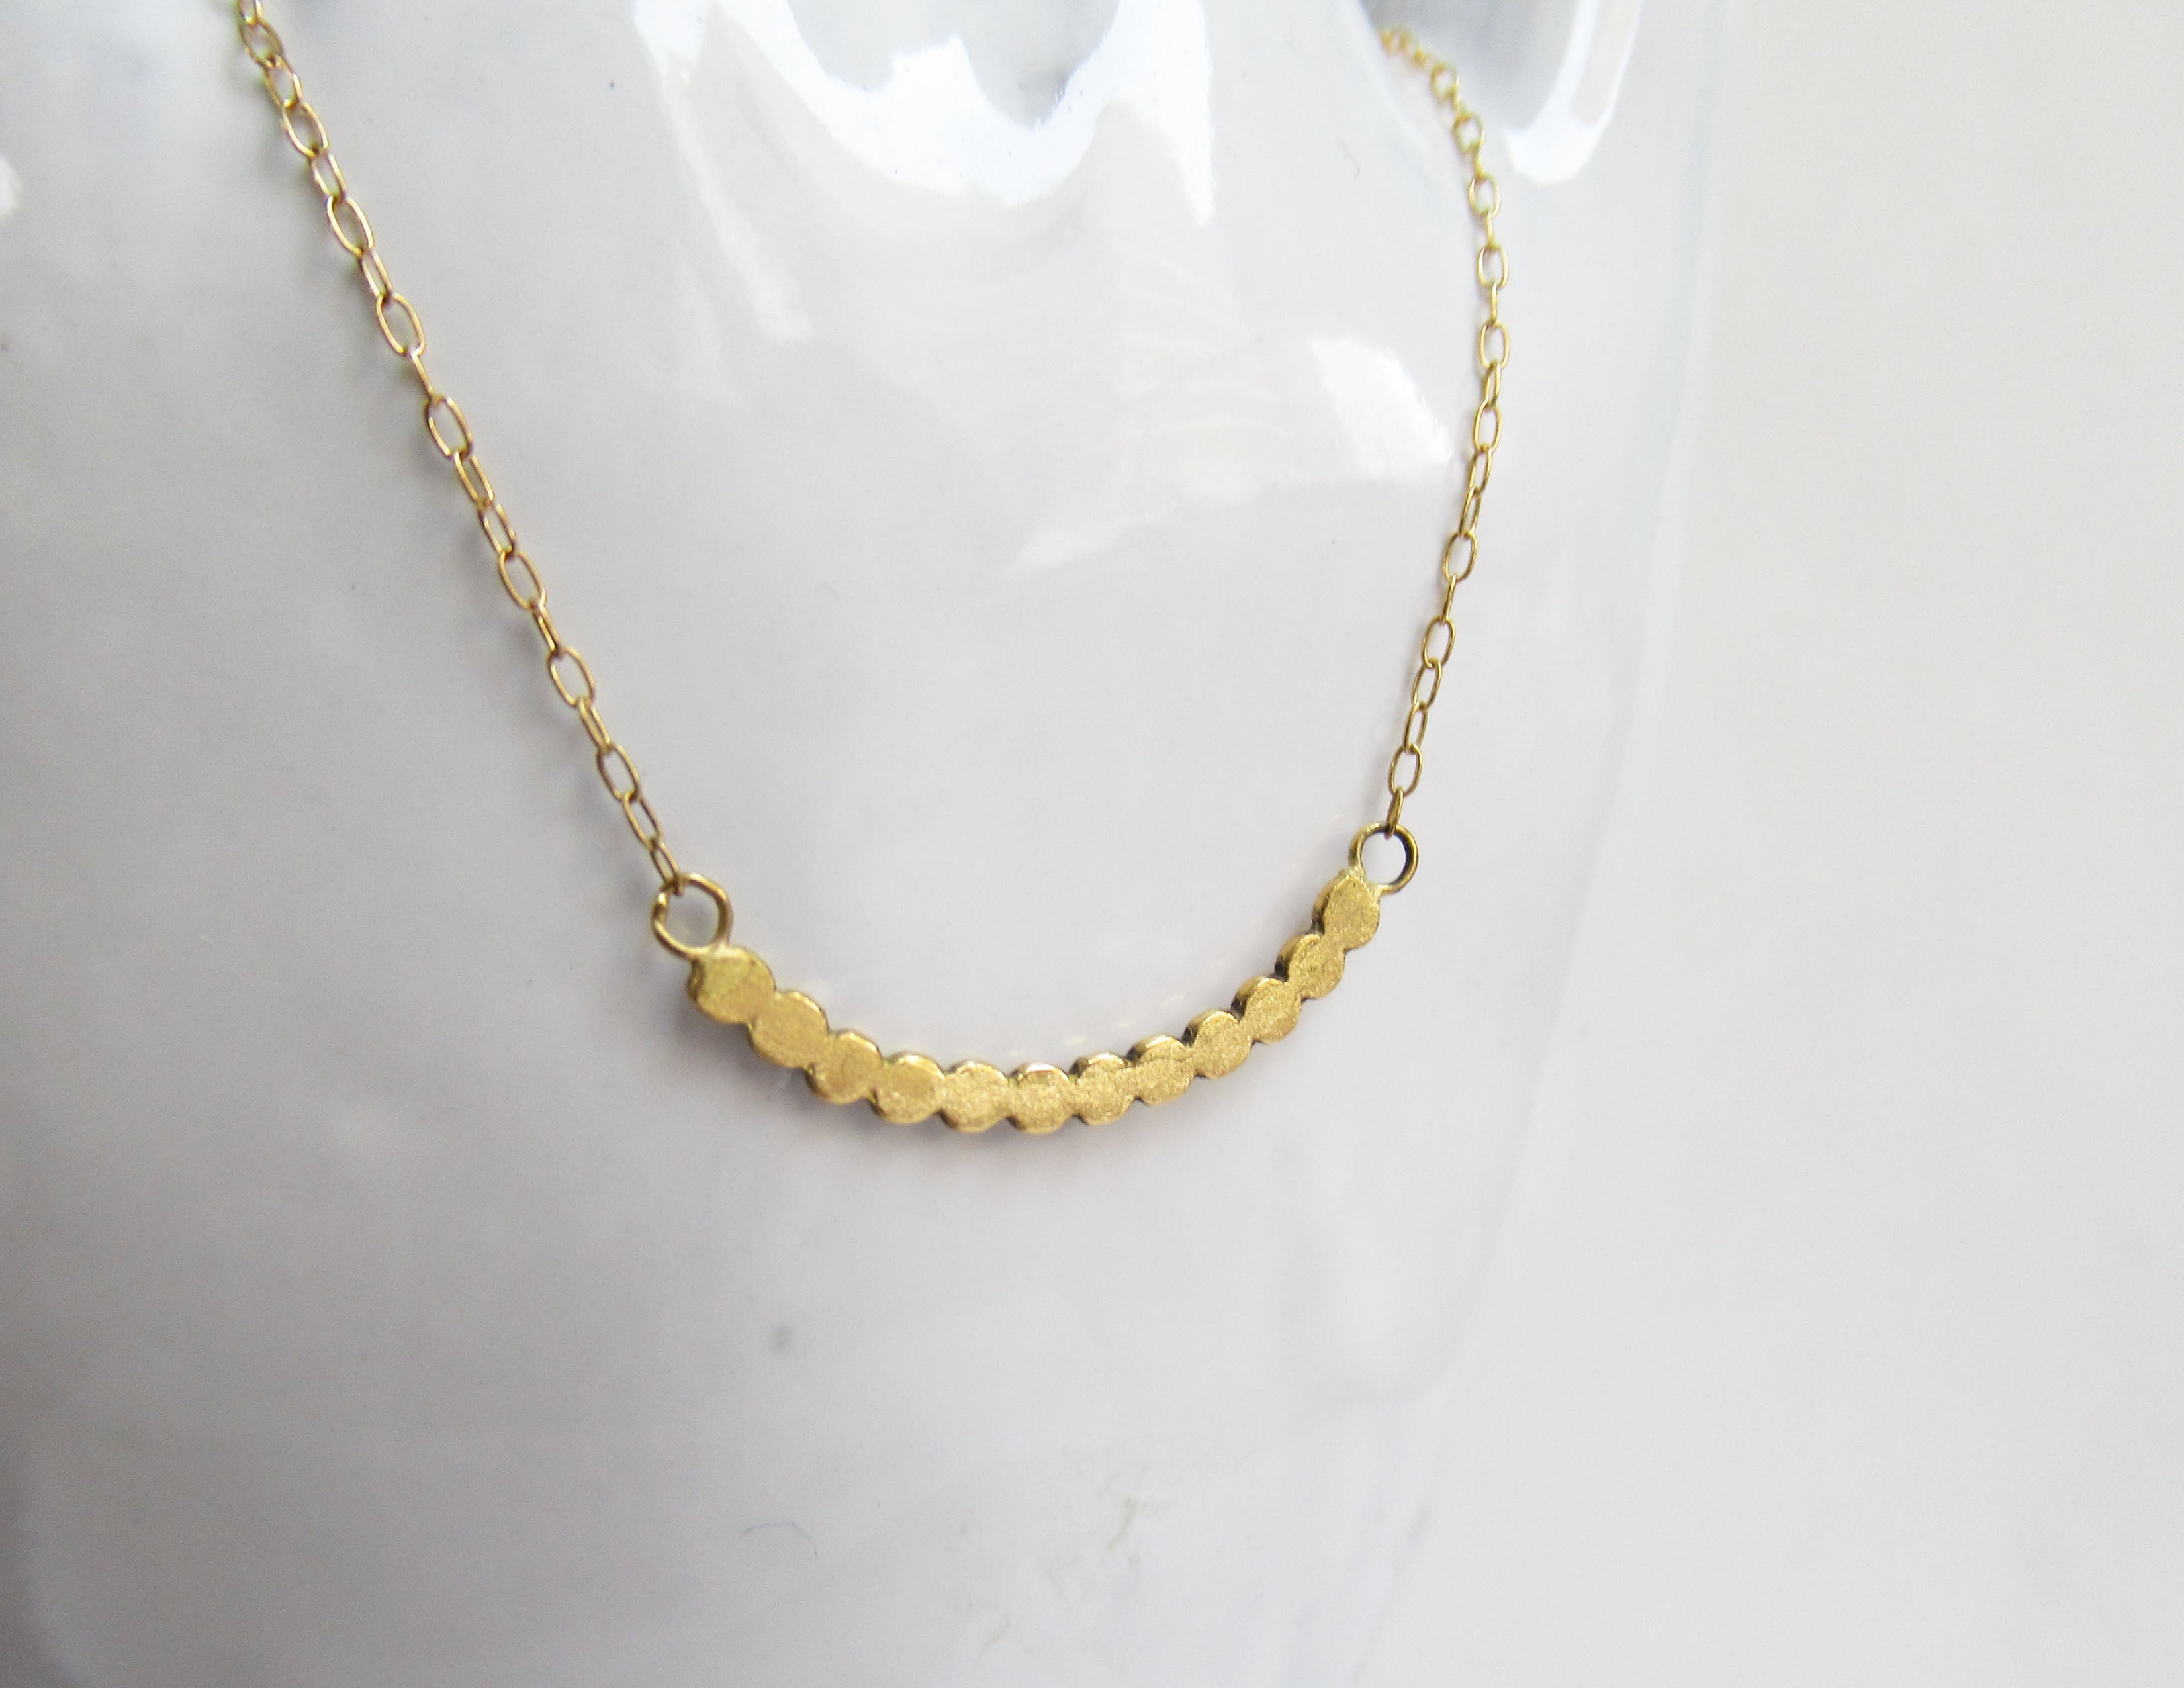 marumaru necklace (K18/40cm) – Perché?